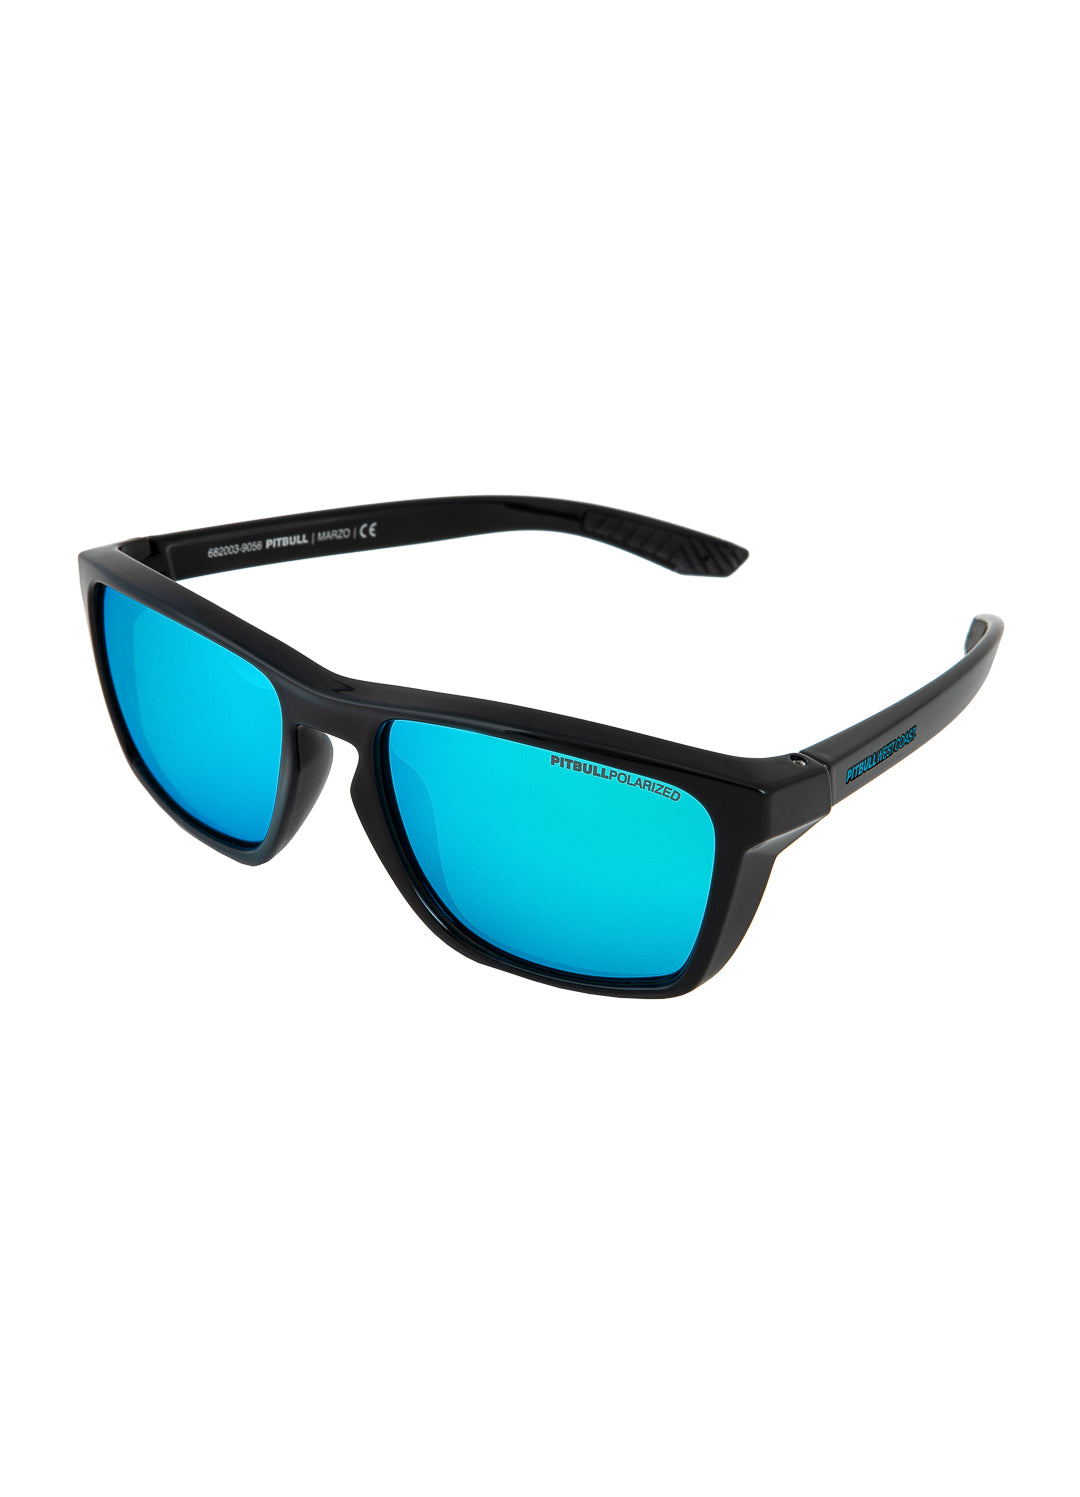 Sunglasses MARZO Black/Blue